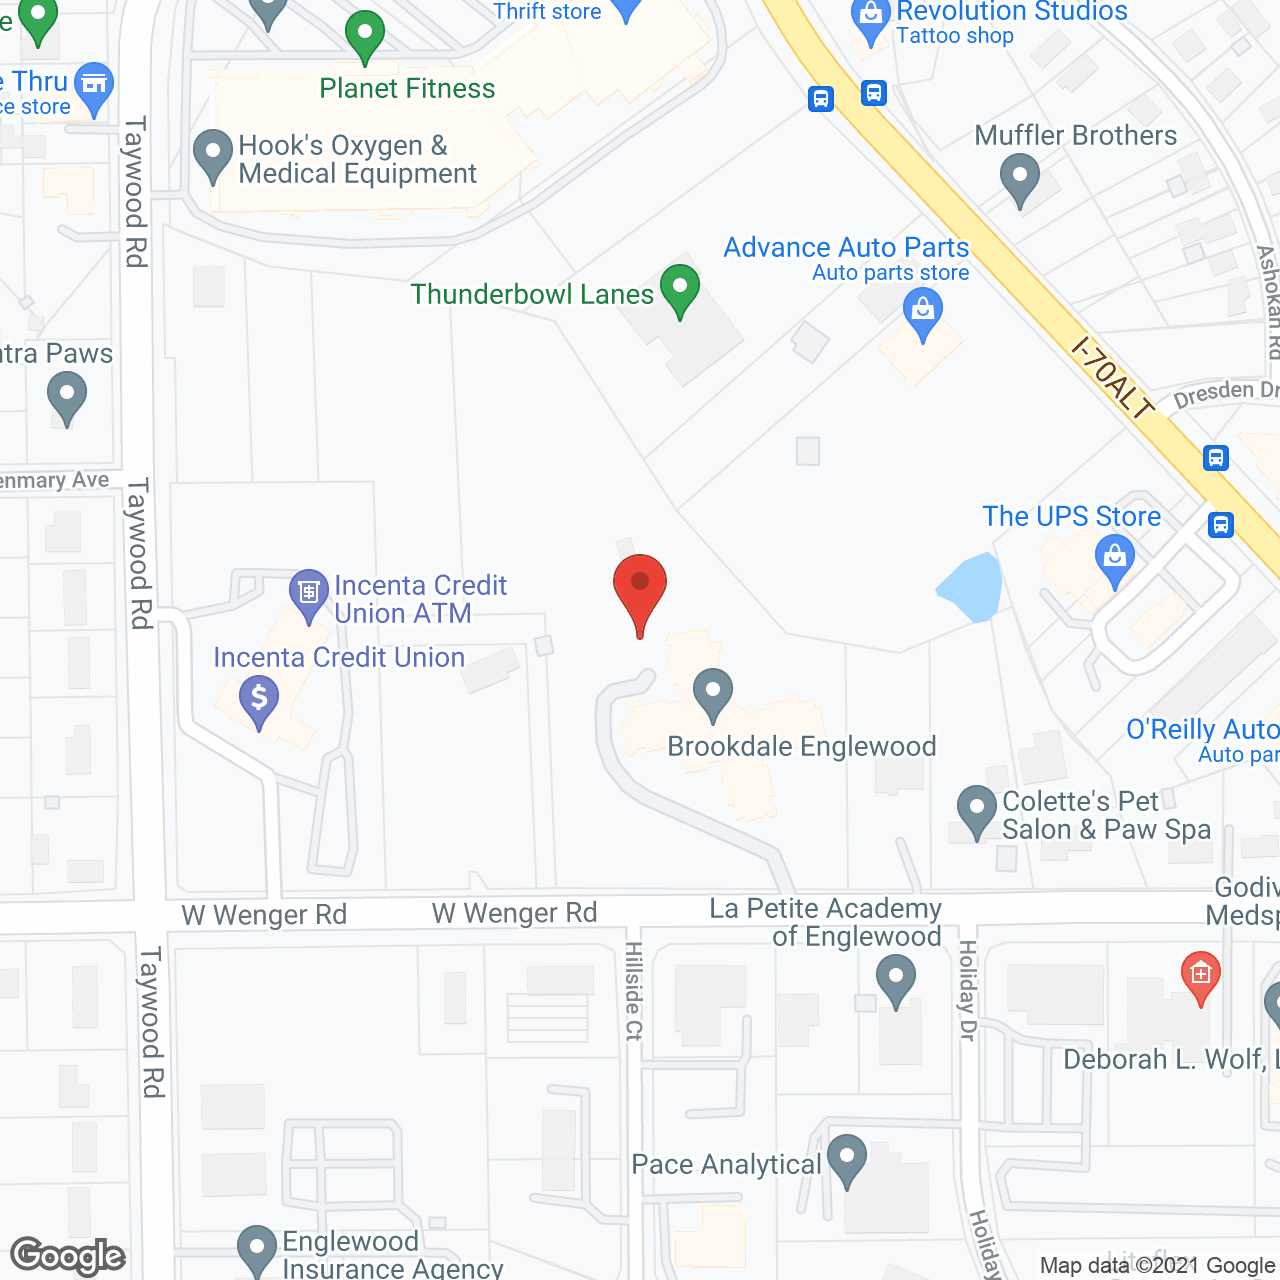 Brookdale Englewood in google map